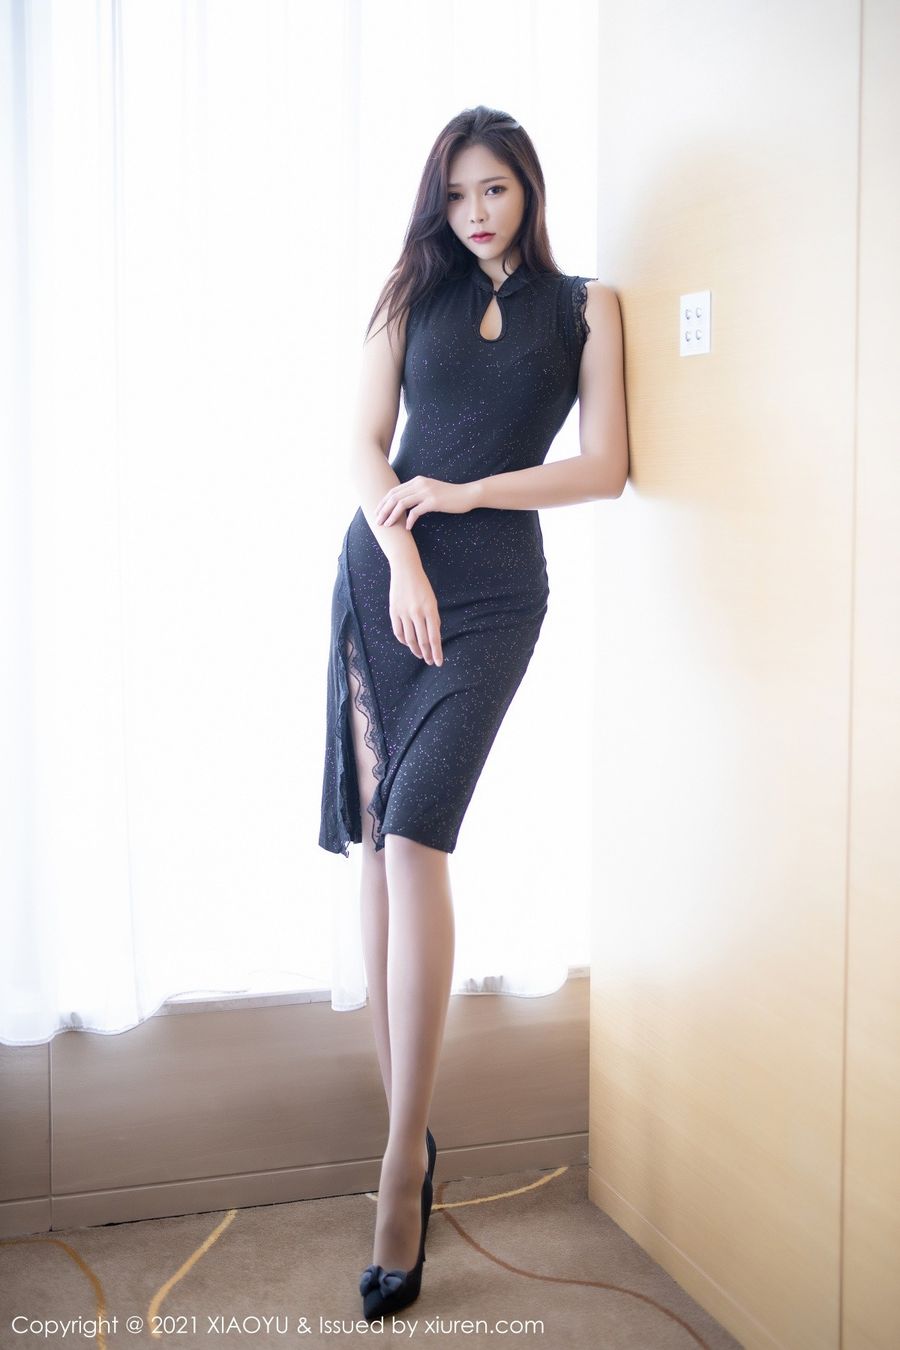 美女模特小娜比优雅礼裙丝袜美腿妖娆系列性感写真